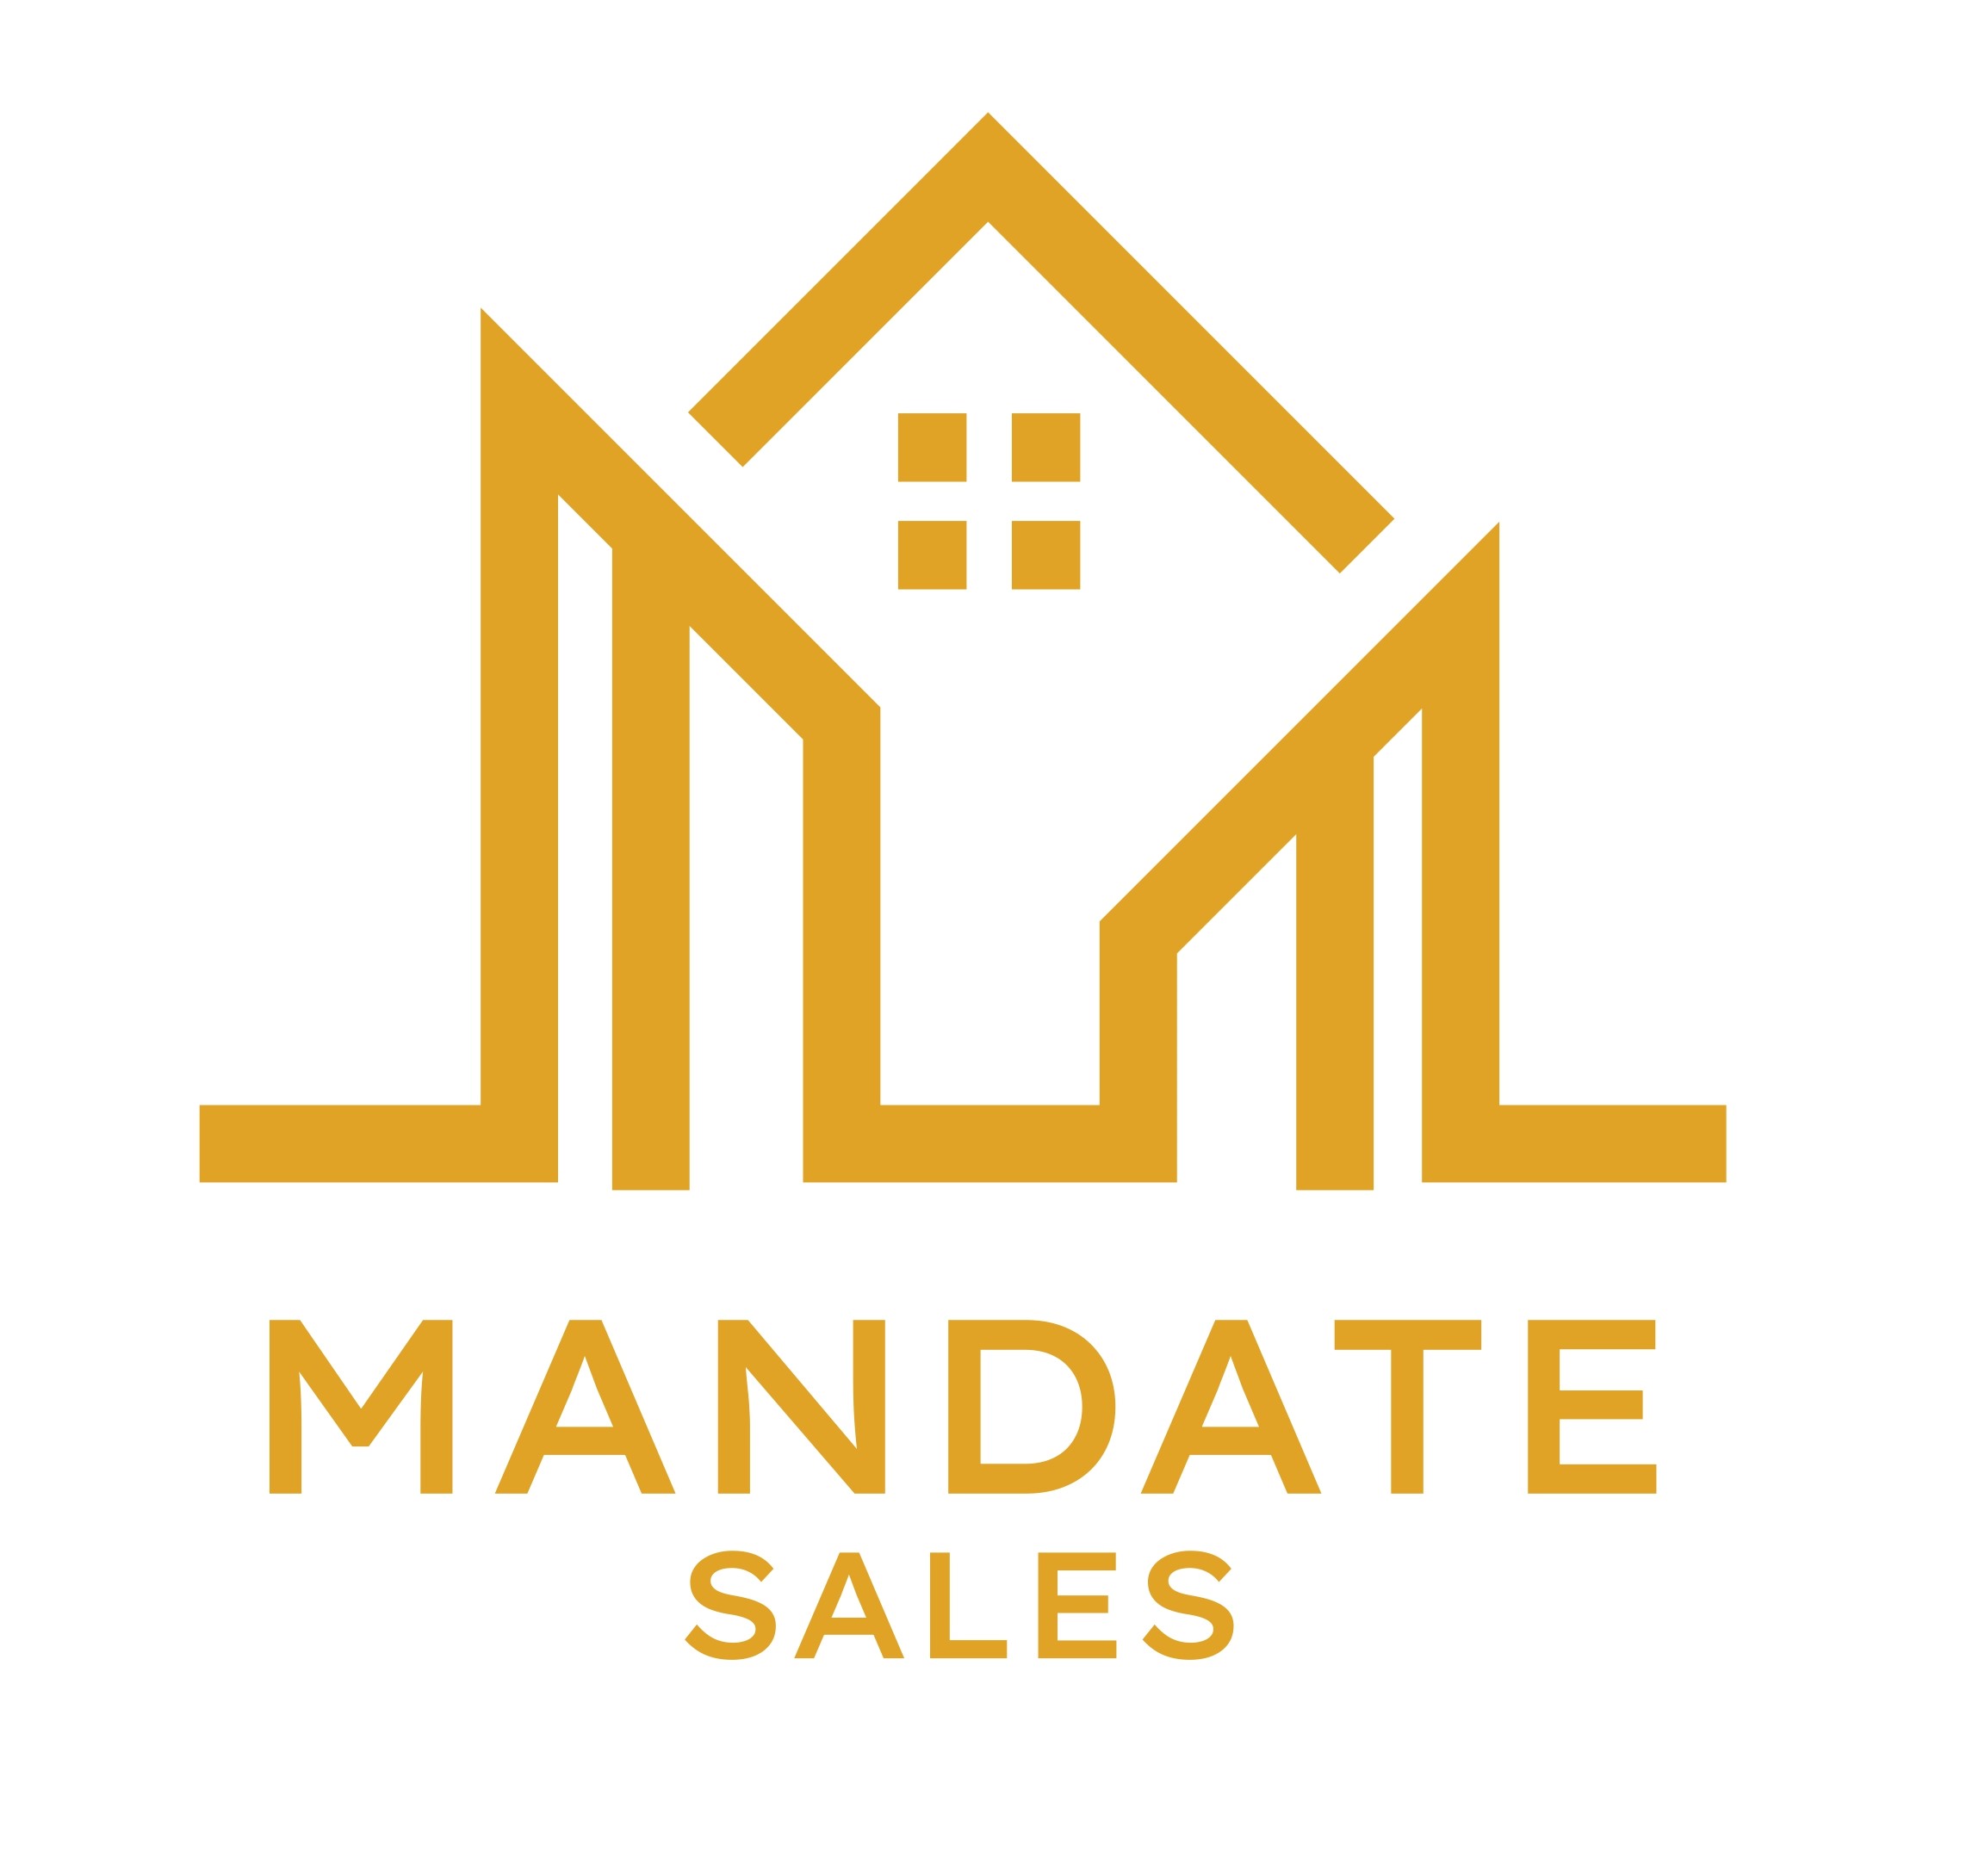 Mandates Sales